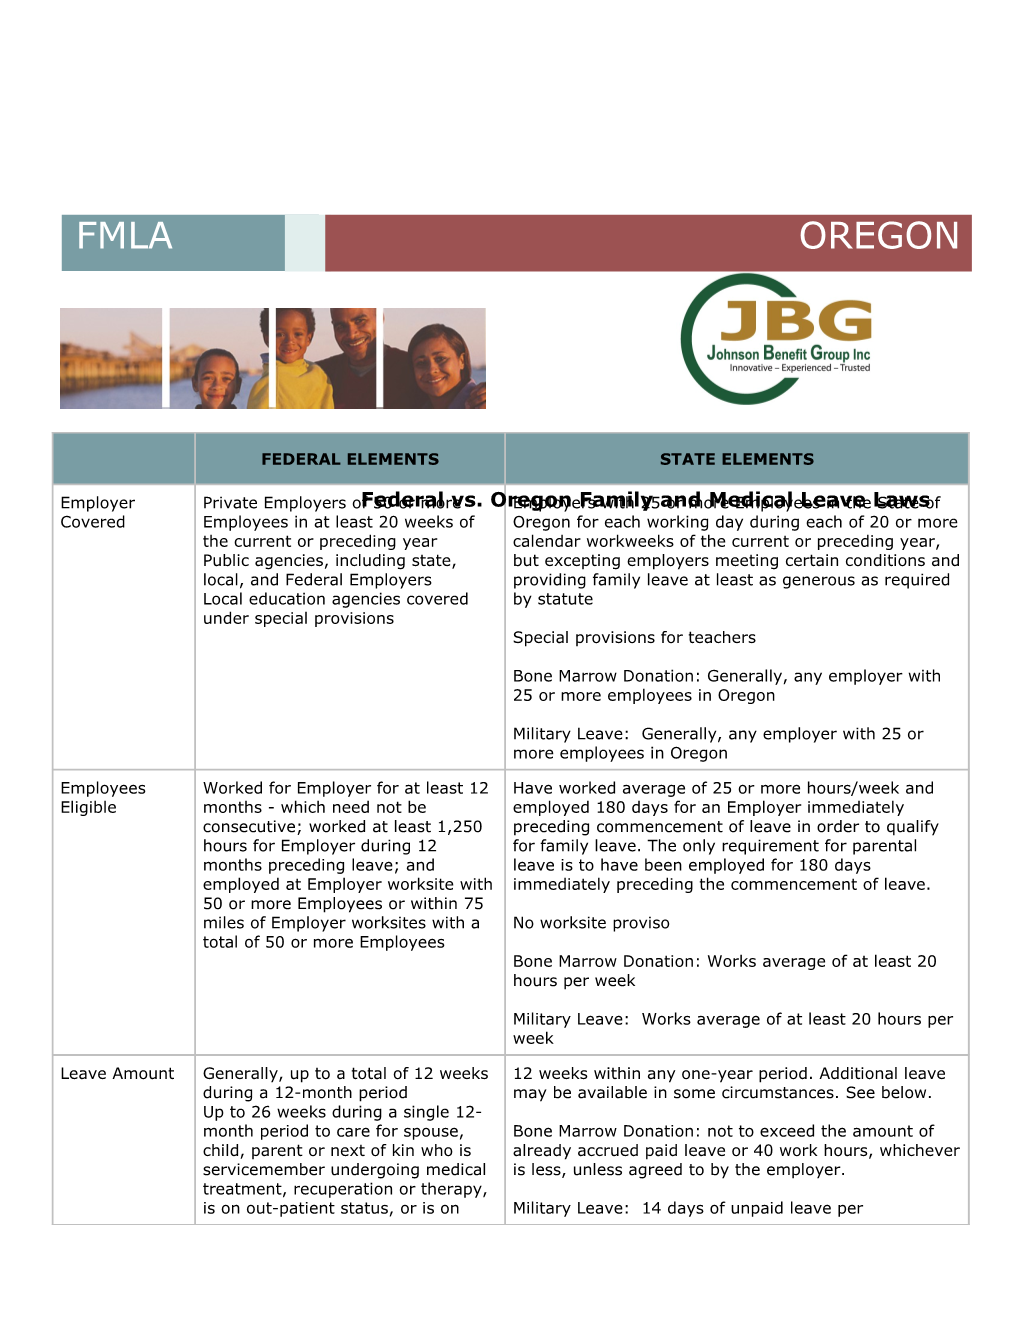 FMLA Chart-Oregon 9-09 (00014416)